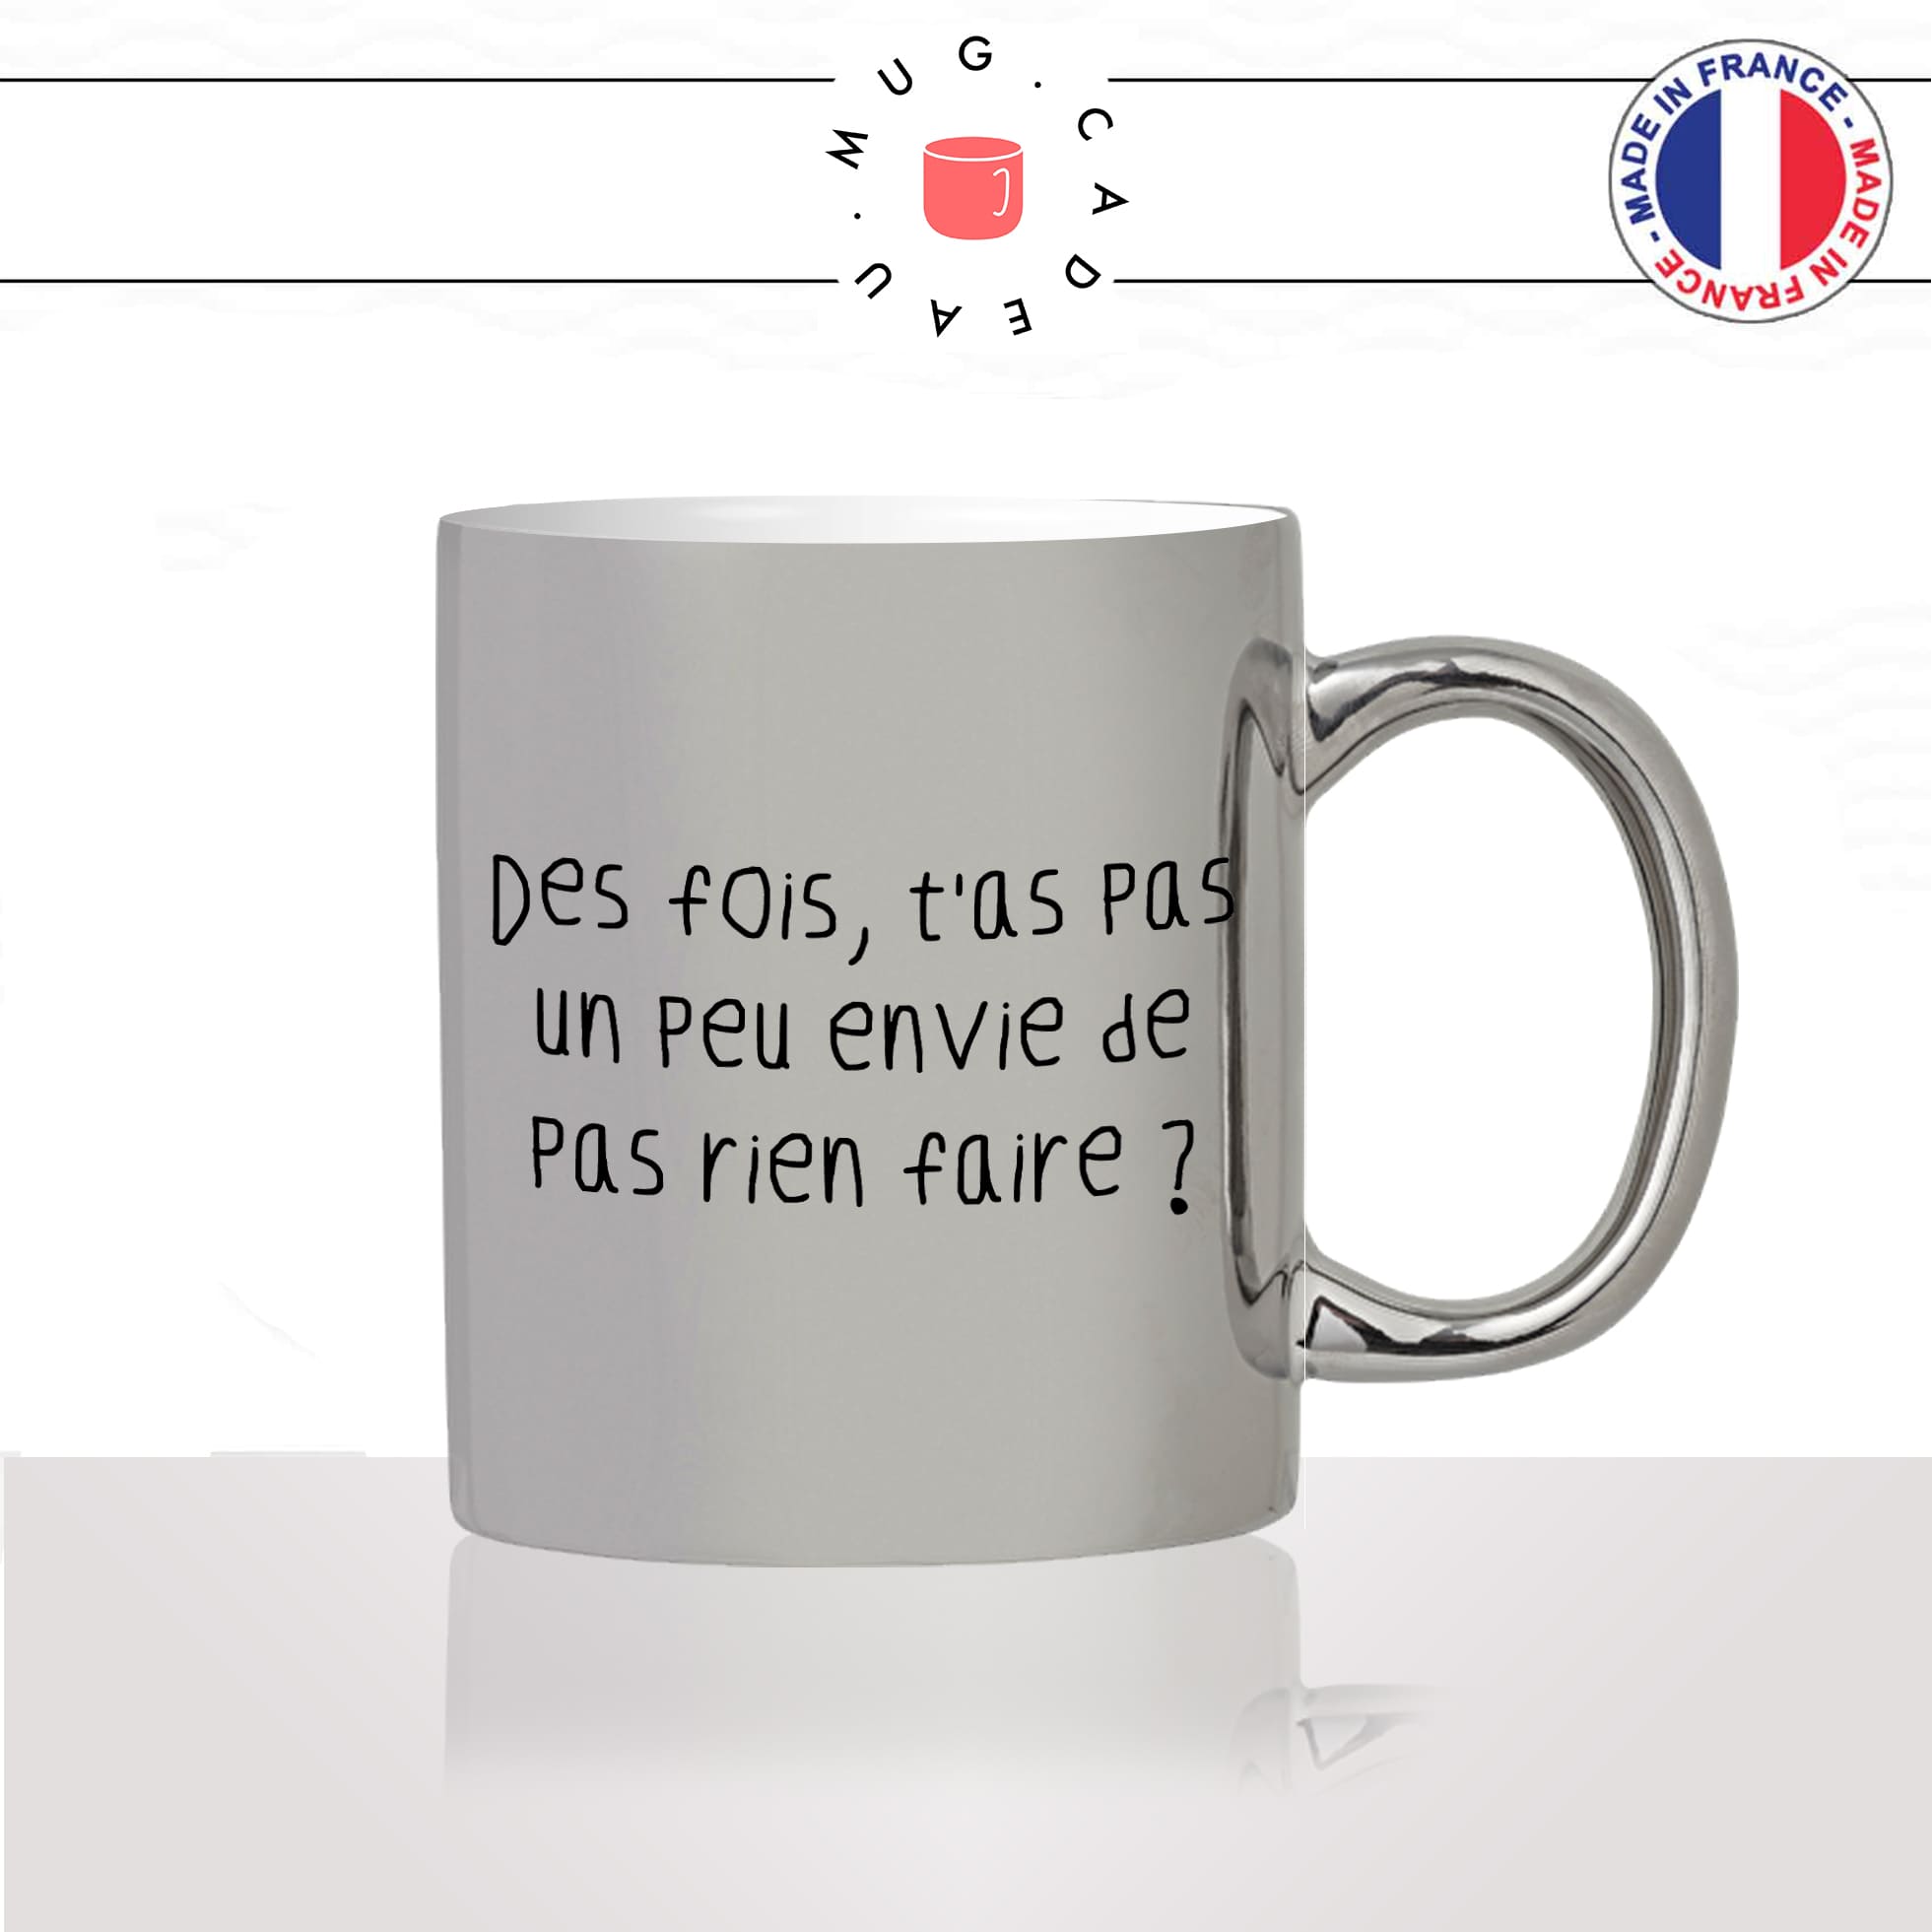 mug-tasse-argent-argenté-silver-film-francais-Rrrr-chabbat-envie-de-rien-faire-flemme-collegue-homme-couple-idée-cadeau-fun-cool-café-thé2